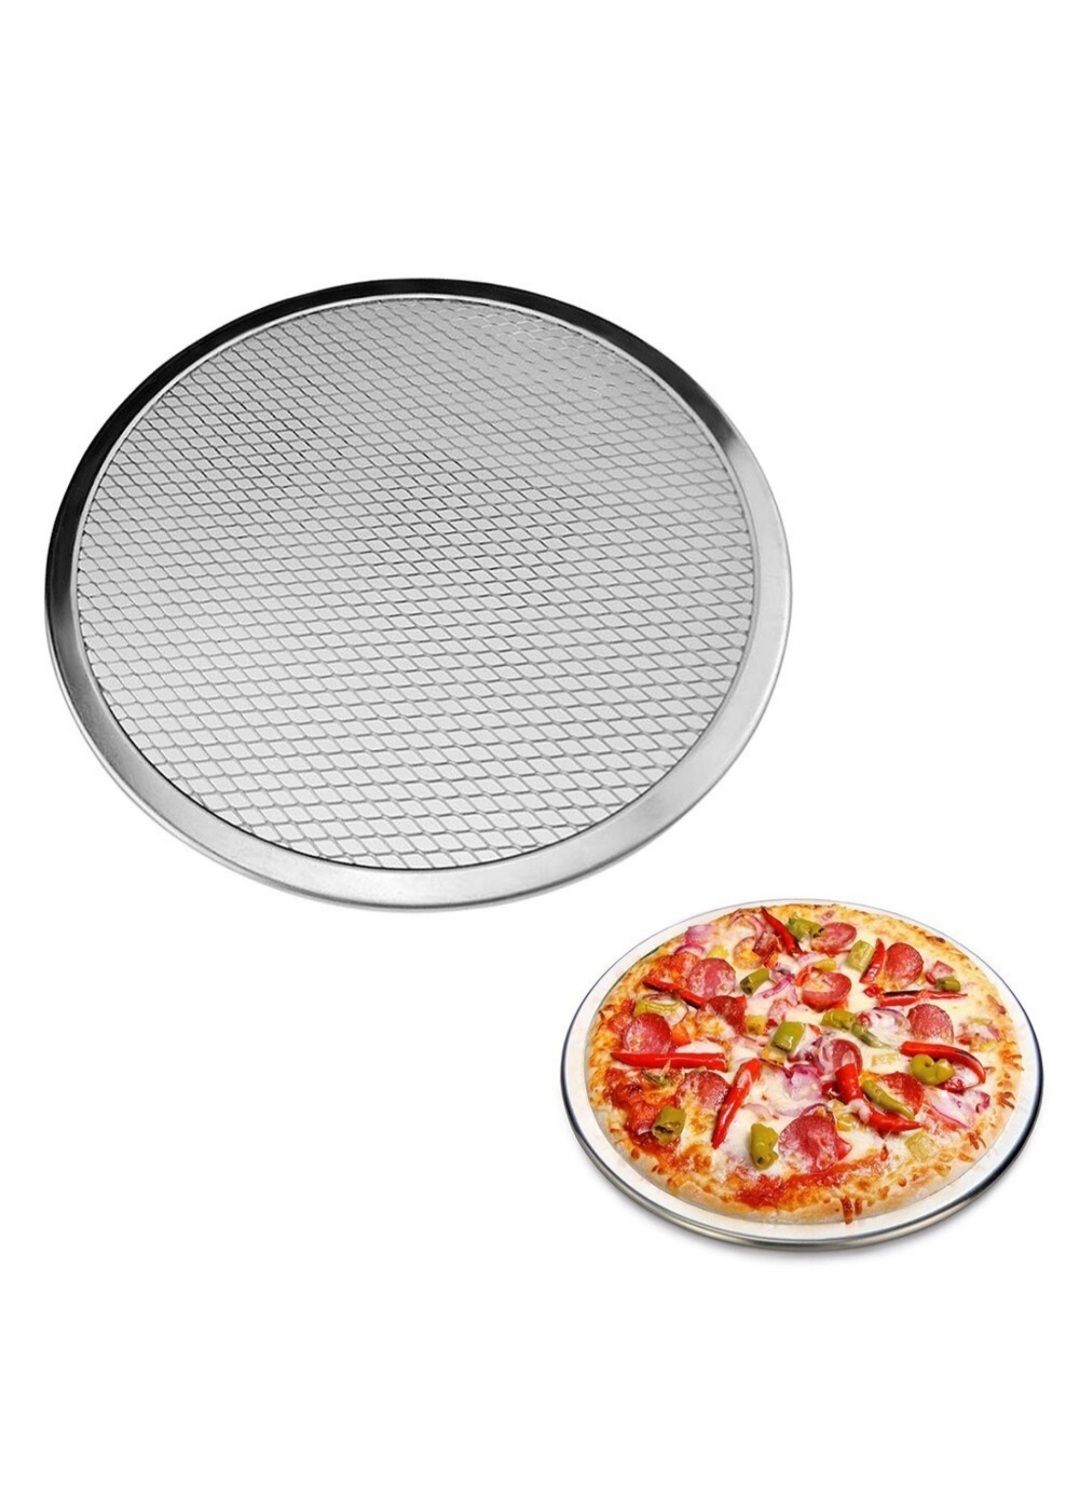 форма для пиццы с дырочками как пользоваться в духовке фото 51